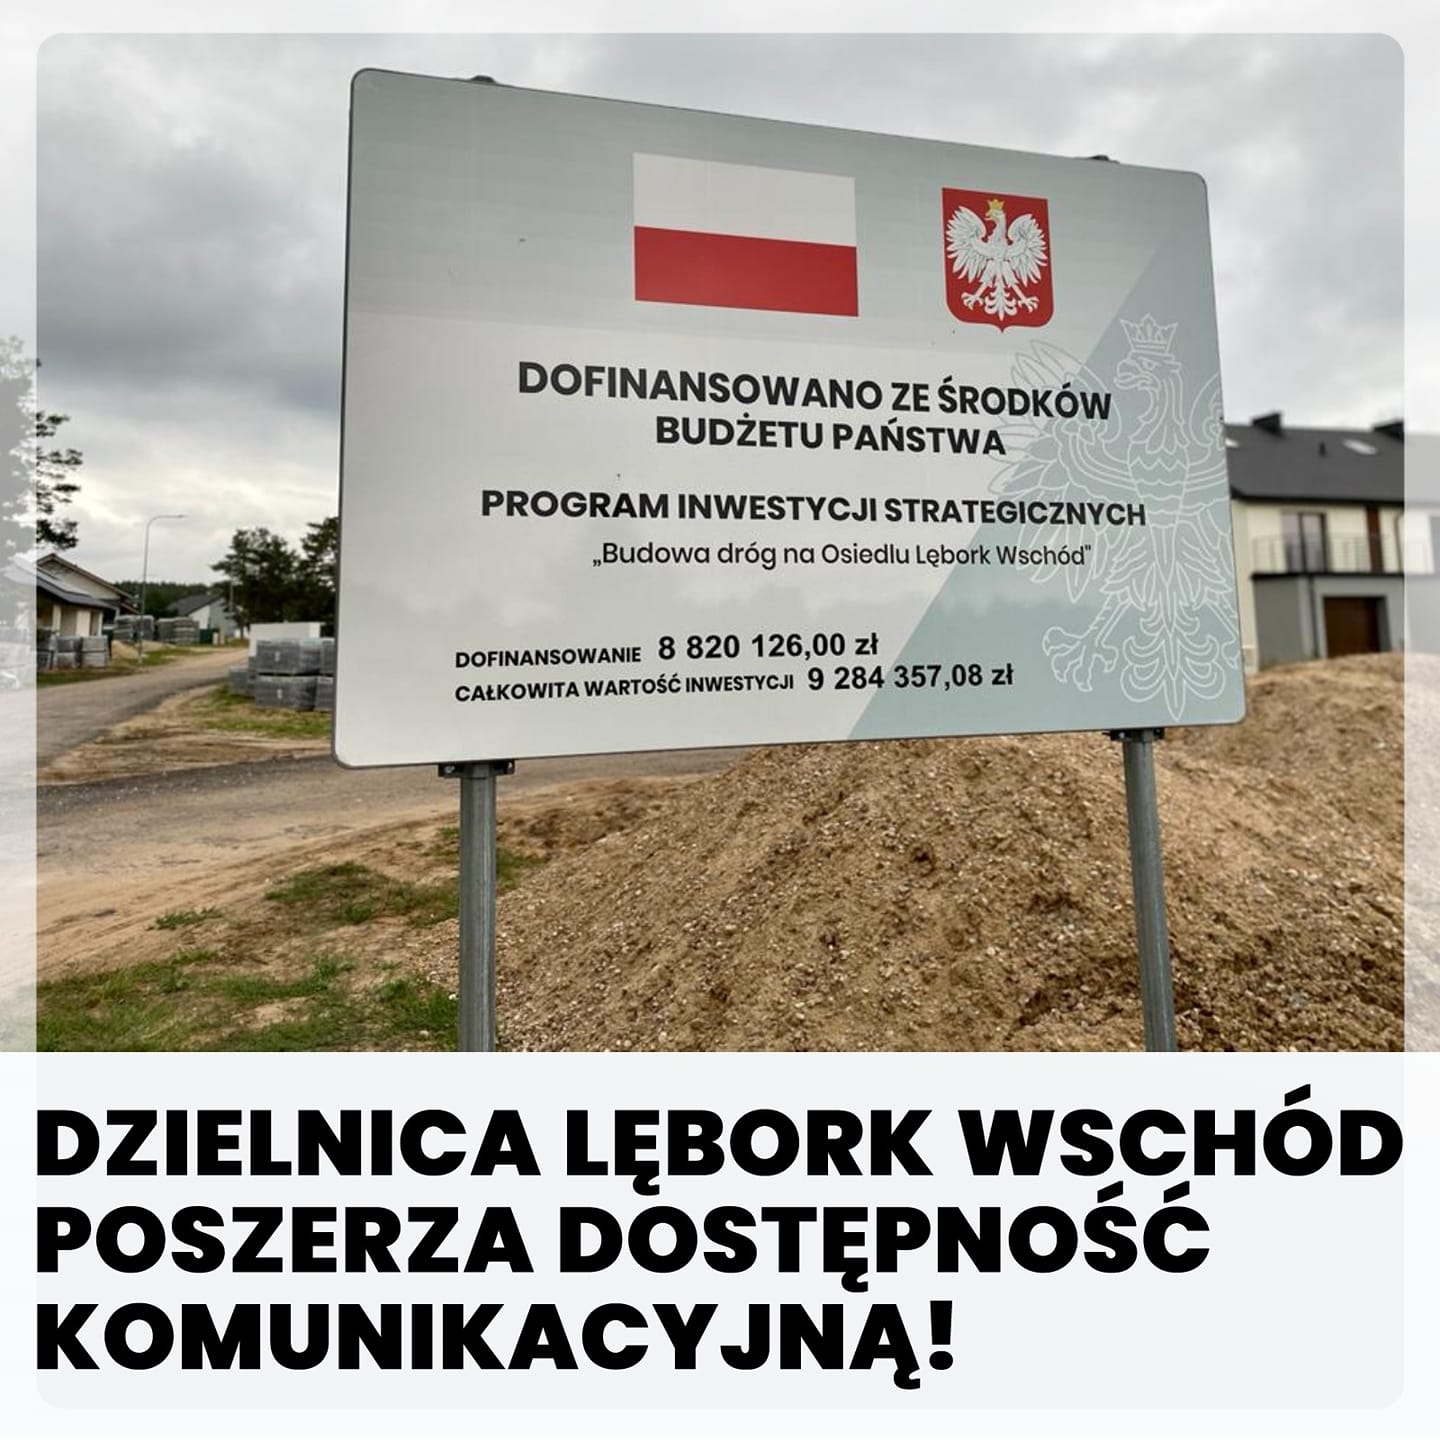 Dzielnica Lębork Wschód poszerza dostępność komunikacyjną